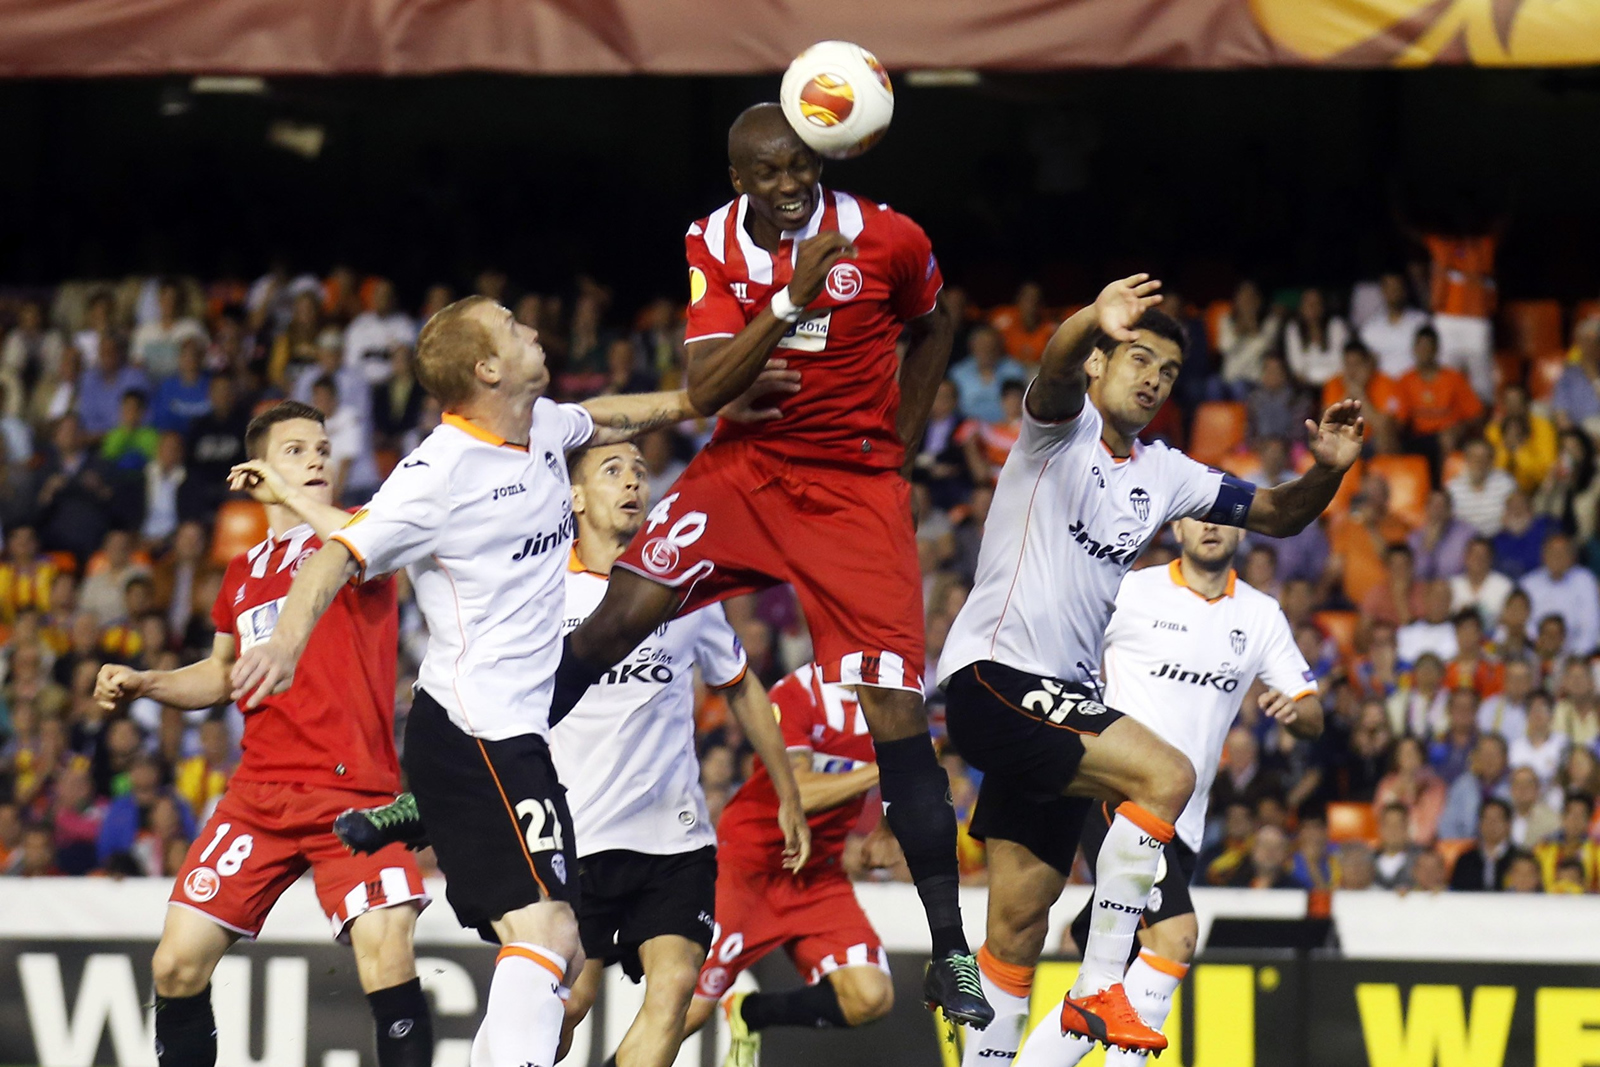 Histórico gol de Mbia en el minuto 94 mete al Sevilla en la final de la Europa League